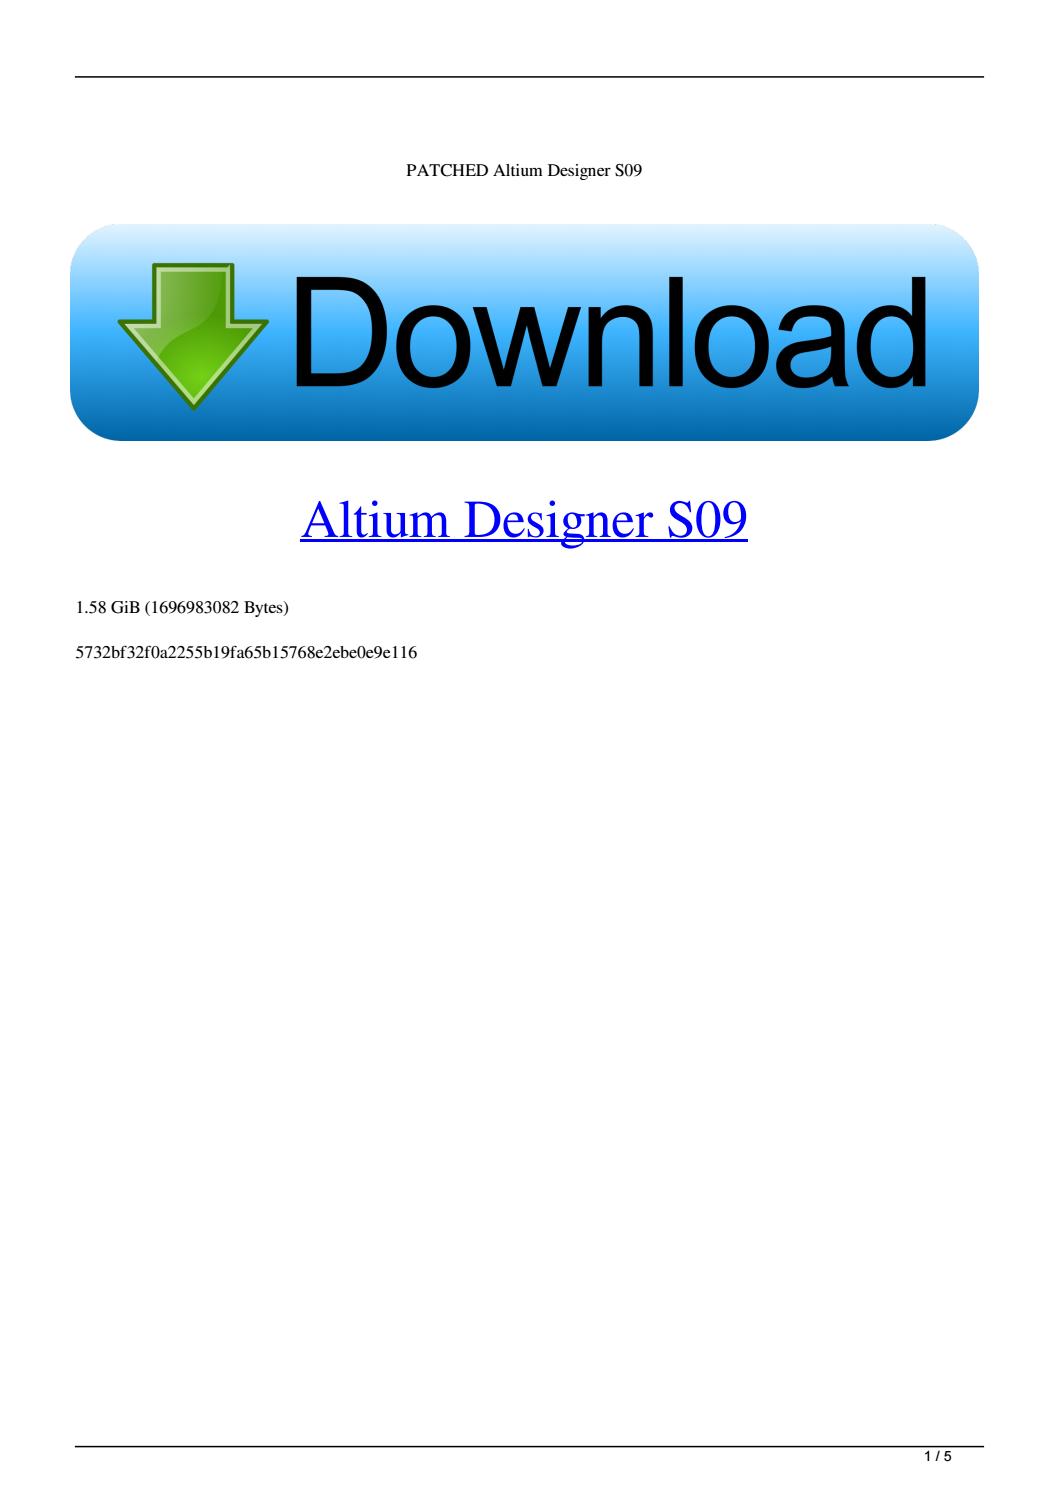 altium designer license price